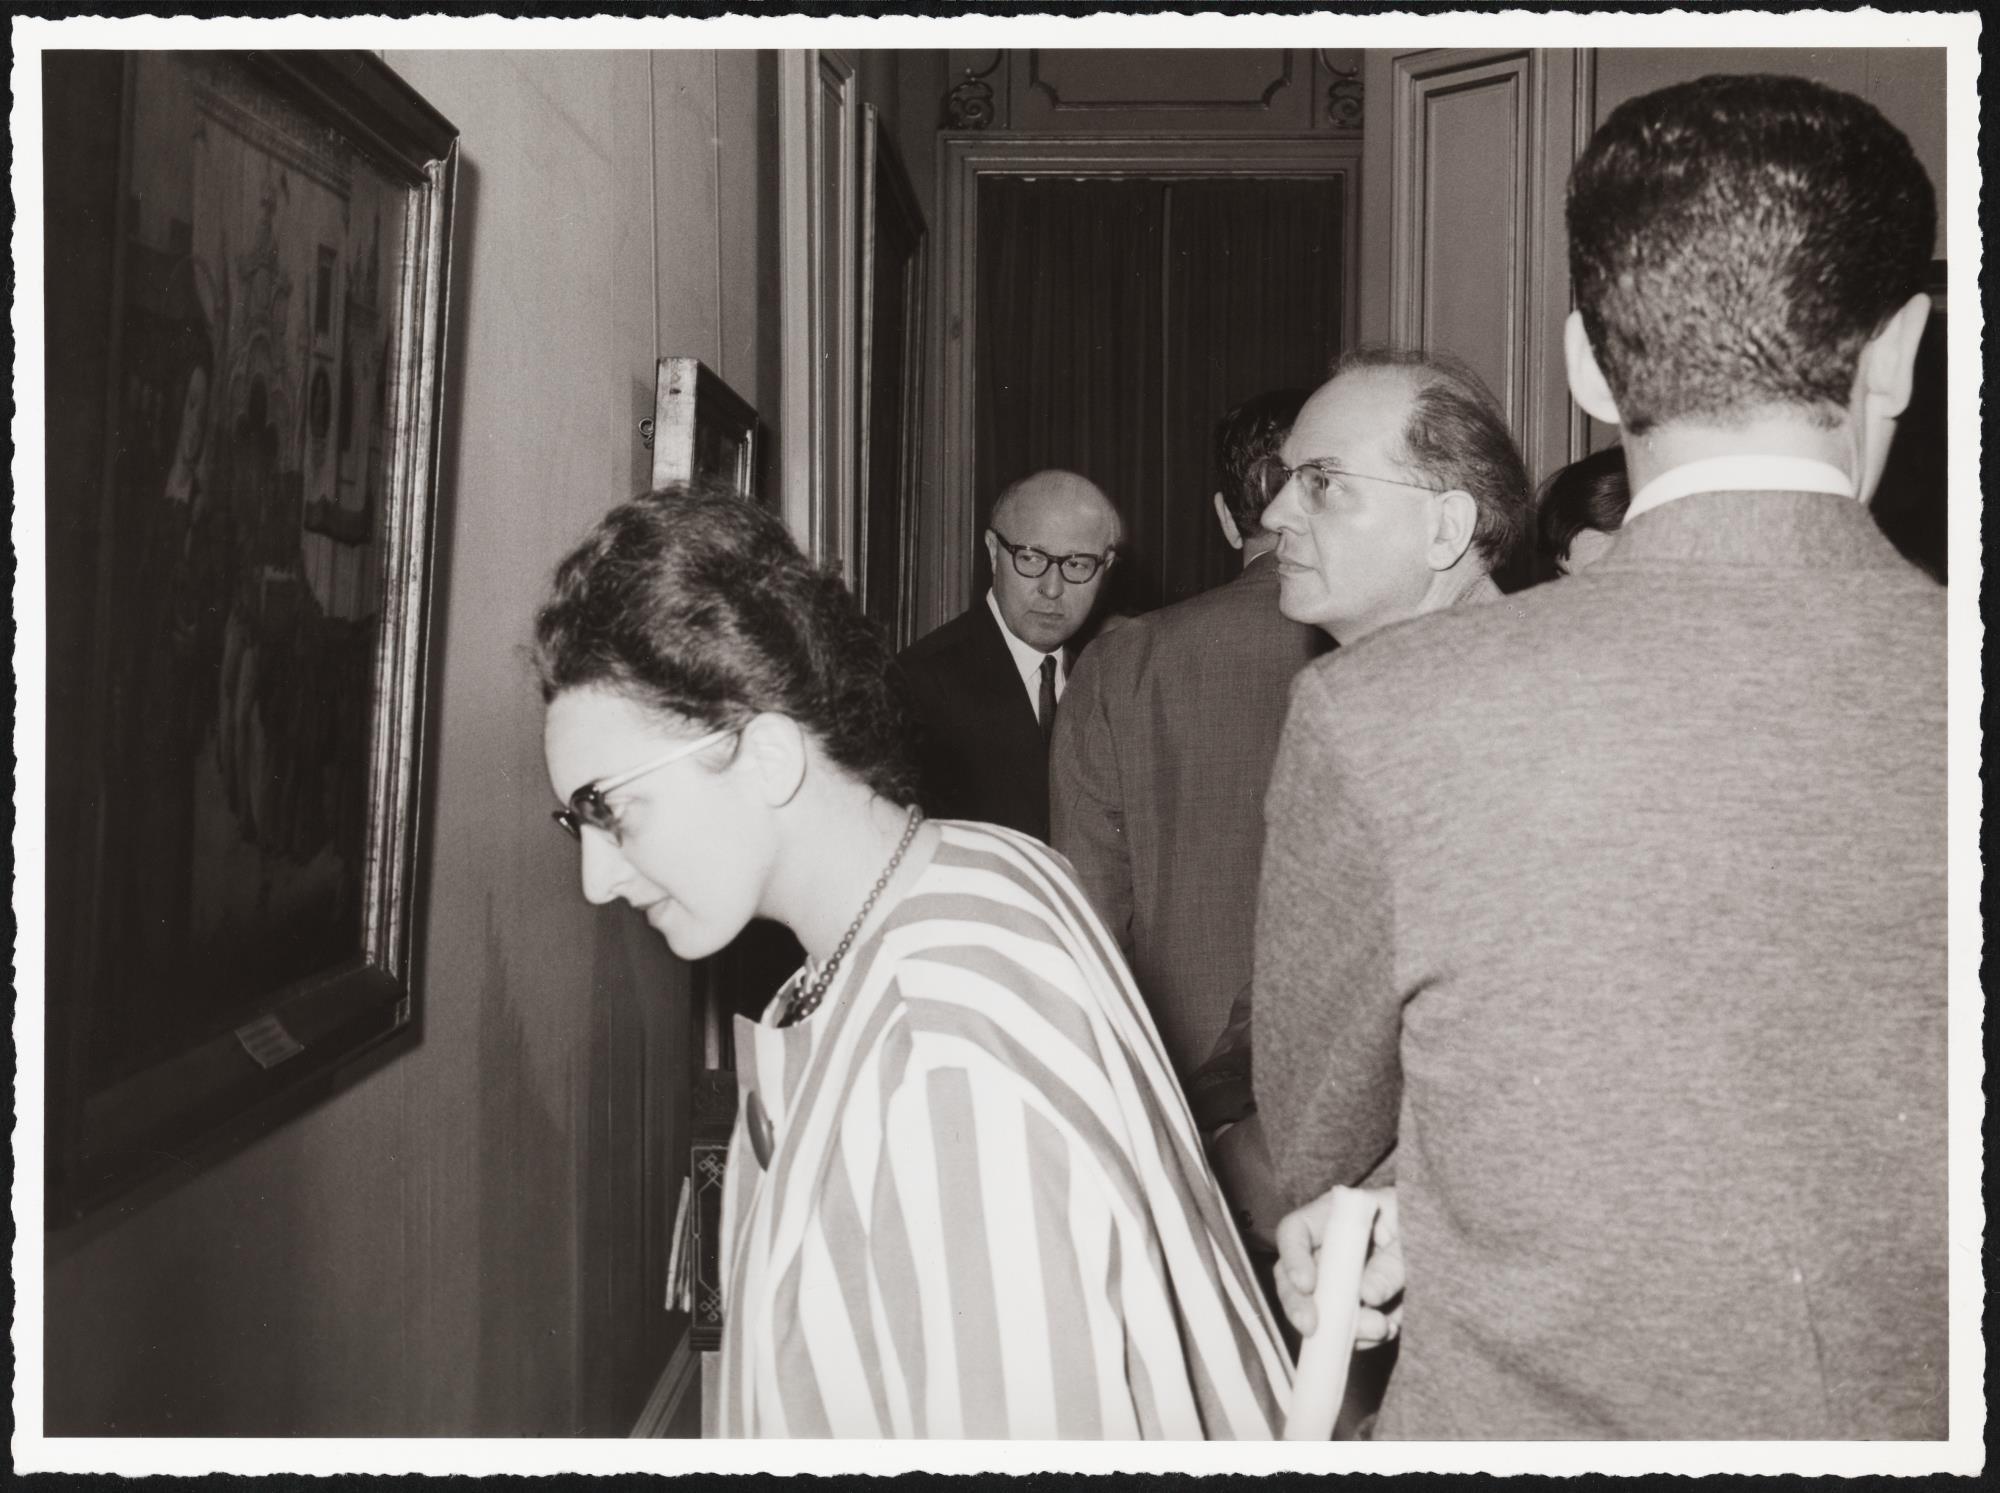 Visita à exposição no âmbito da vinda a Portugal do compositor Olivier Messiaen. Yvonne Loriod, Olivier Messiaen  e Carl Kastner (ao fundo)